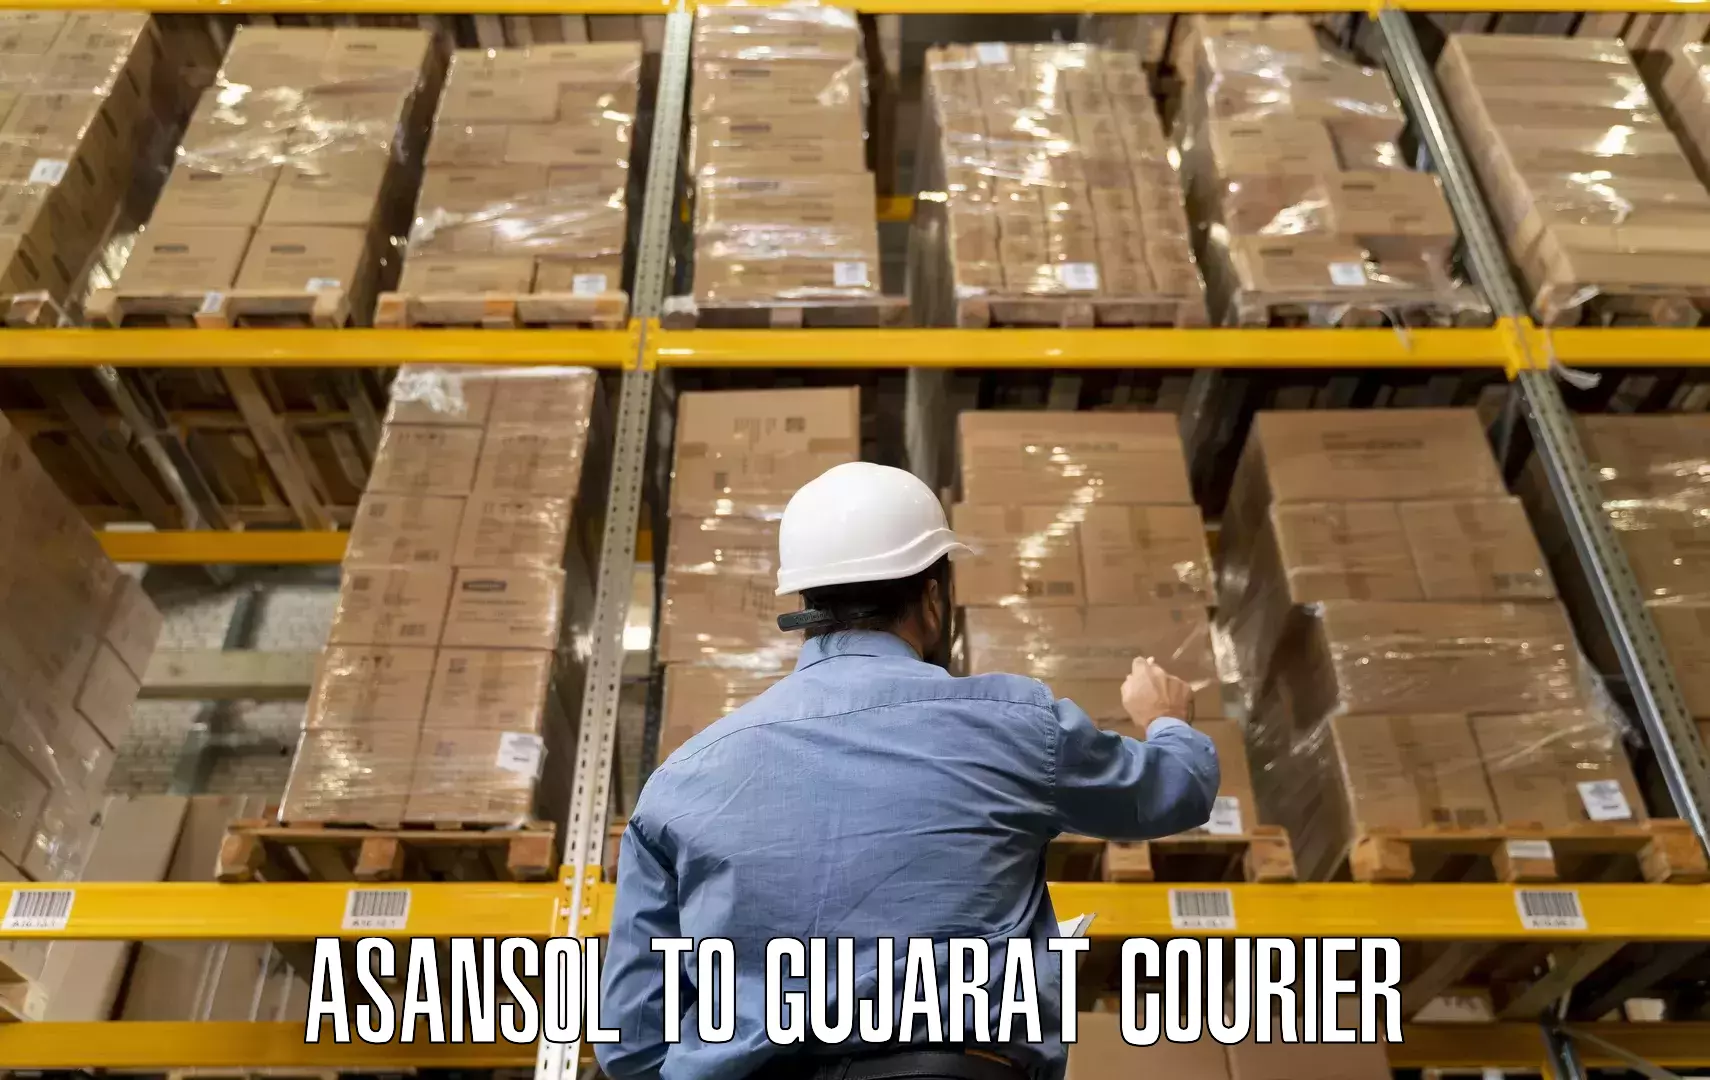 Furniture relocation experts Asansol to Gandhinagar